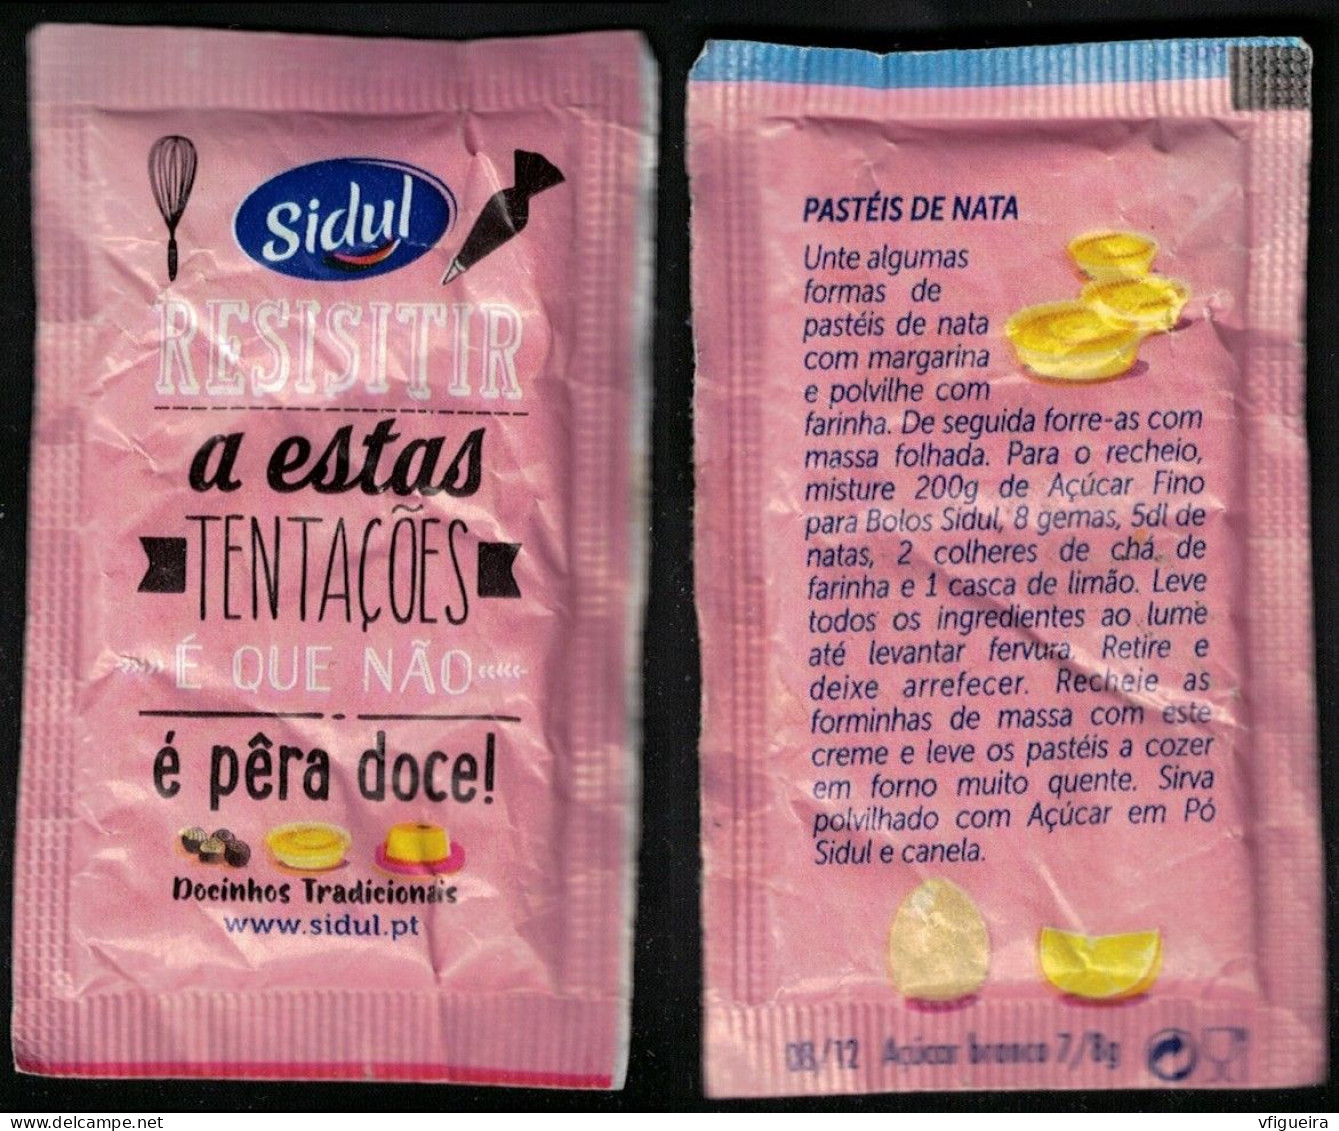 Portugal Sachet Sucre Sugar Bag Sidul Resistir A Estas Tentações é Que Não é Pêra Doce Pastéis De Nata - Sucres